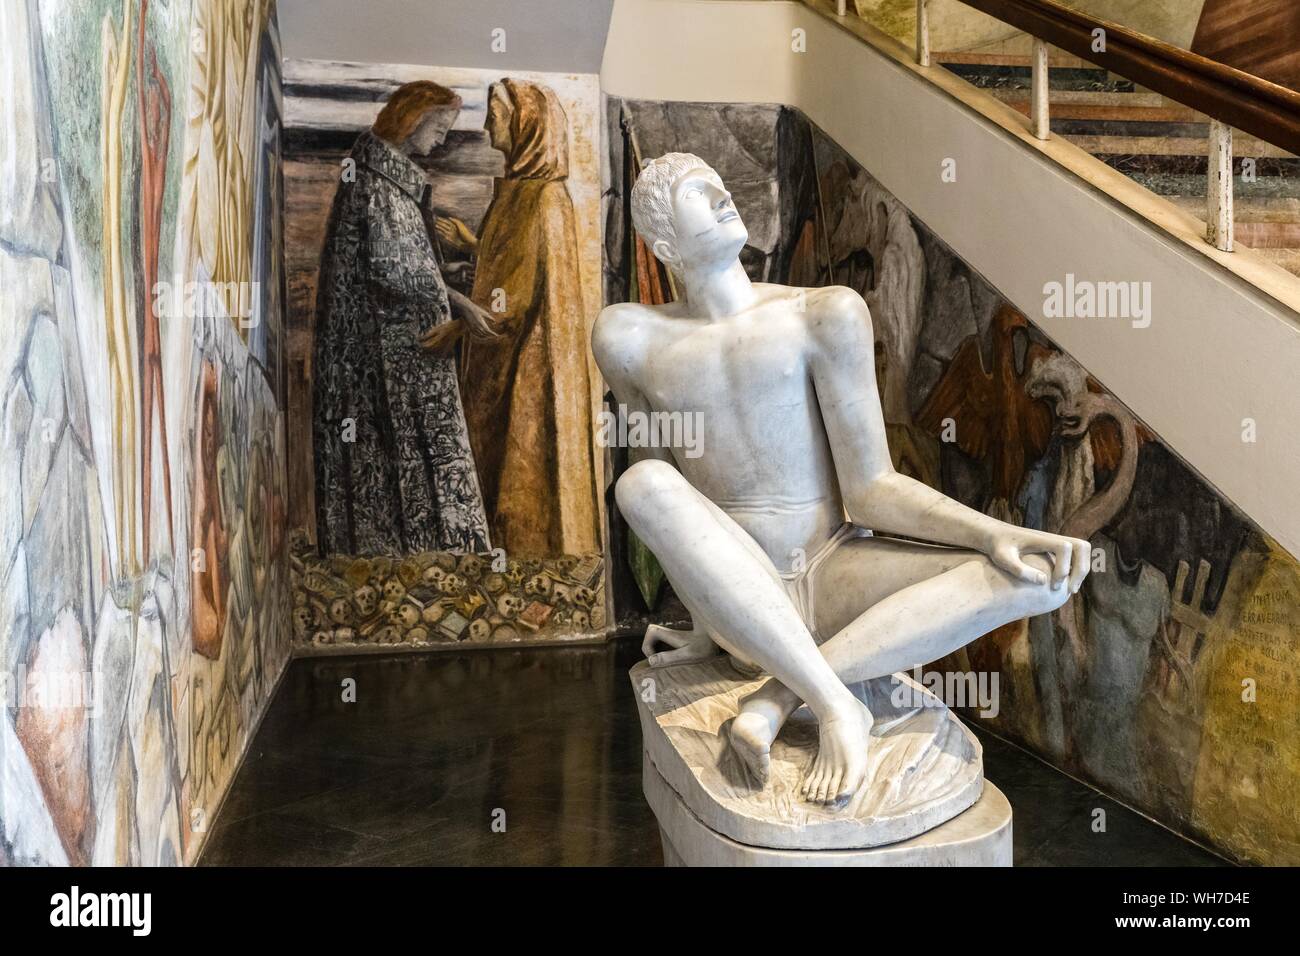 Sculpture, sculpteur Arturo Martini, Université de Padoue, Vénétie, Italie Banque D'Images